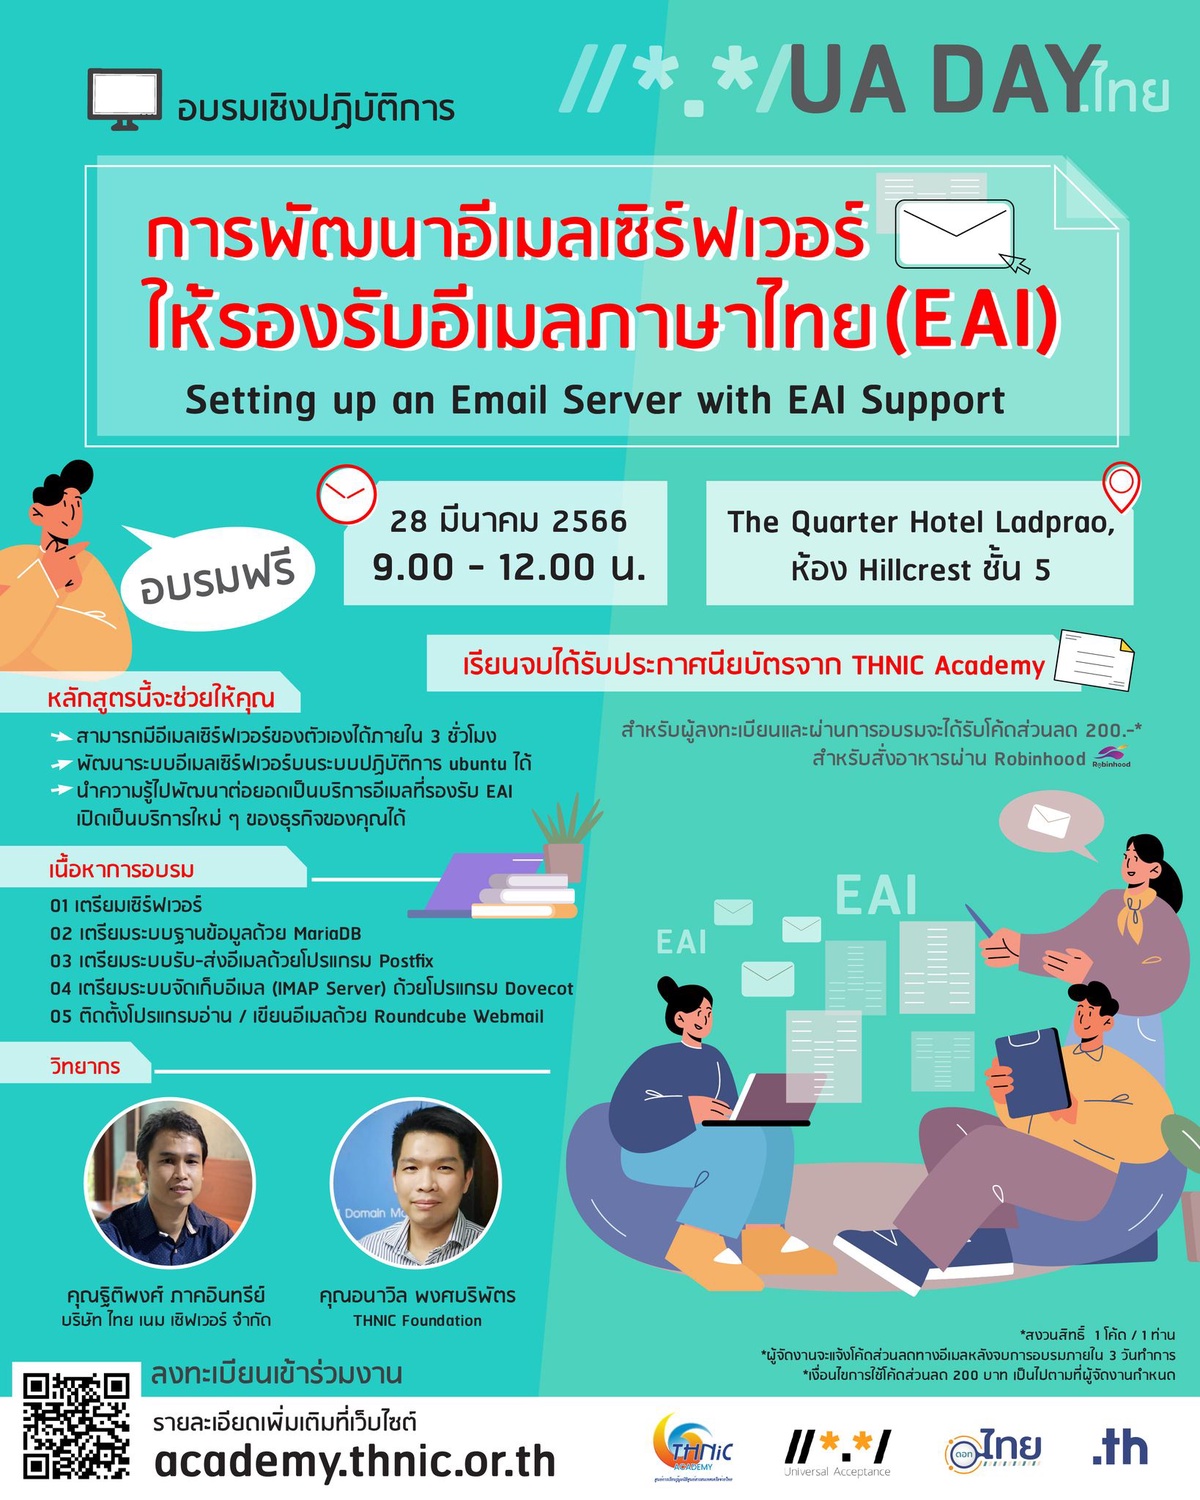 ทีเอชนิค เปิดอบรมฟรี การพัฒนาอีเมลเซิร์ฟเวอร์ให้รองรับอีเมลภาษาไทย (EAI) สมัครด่วน